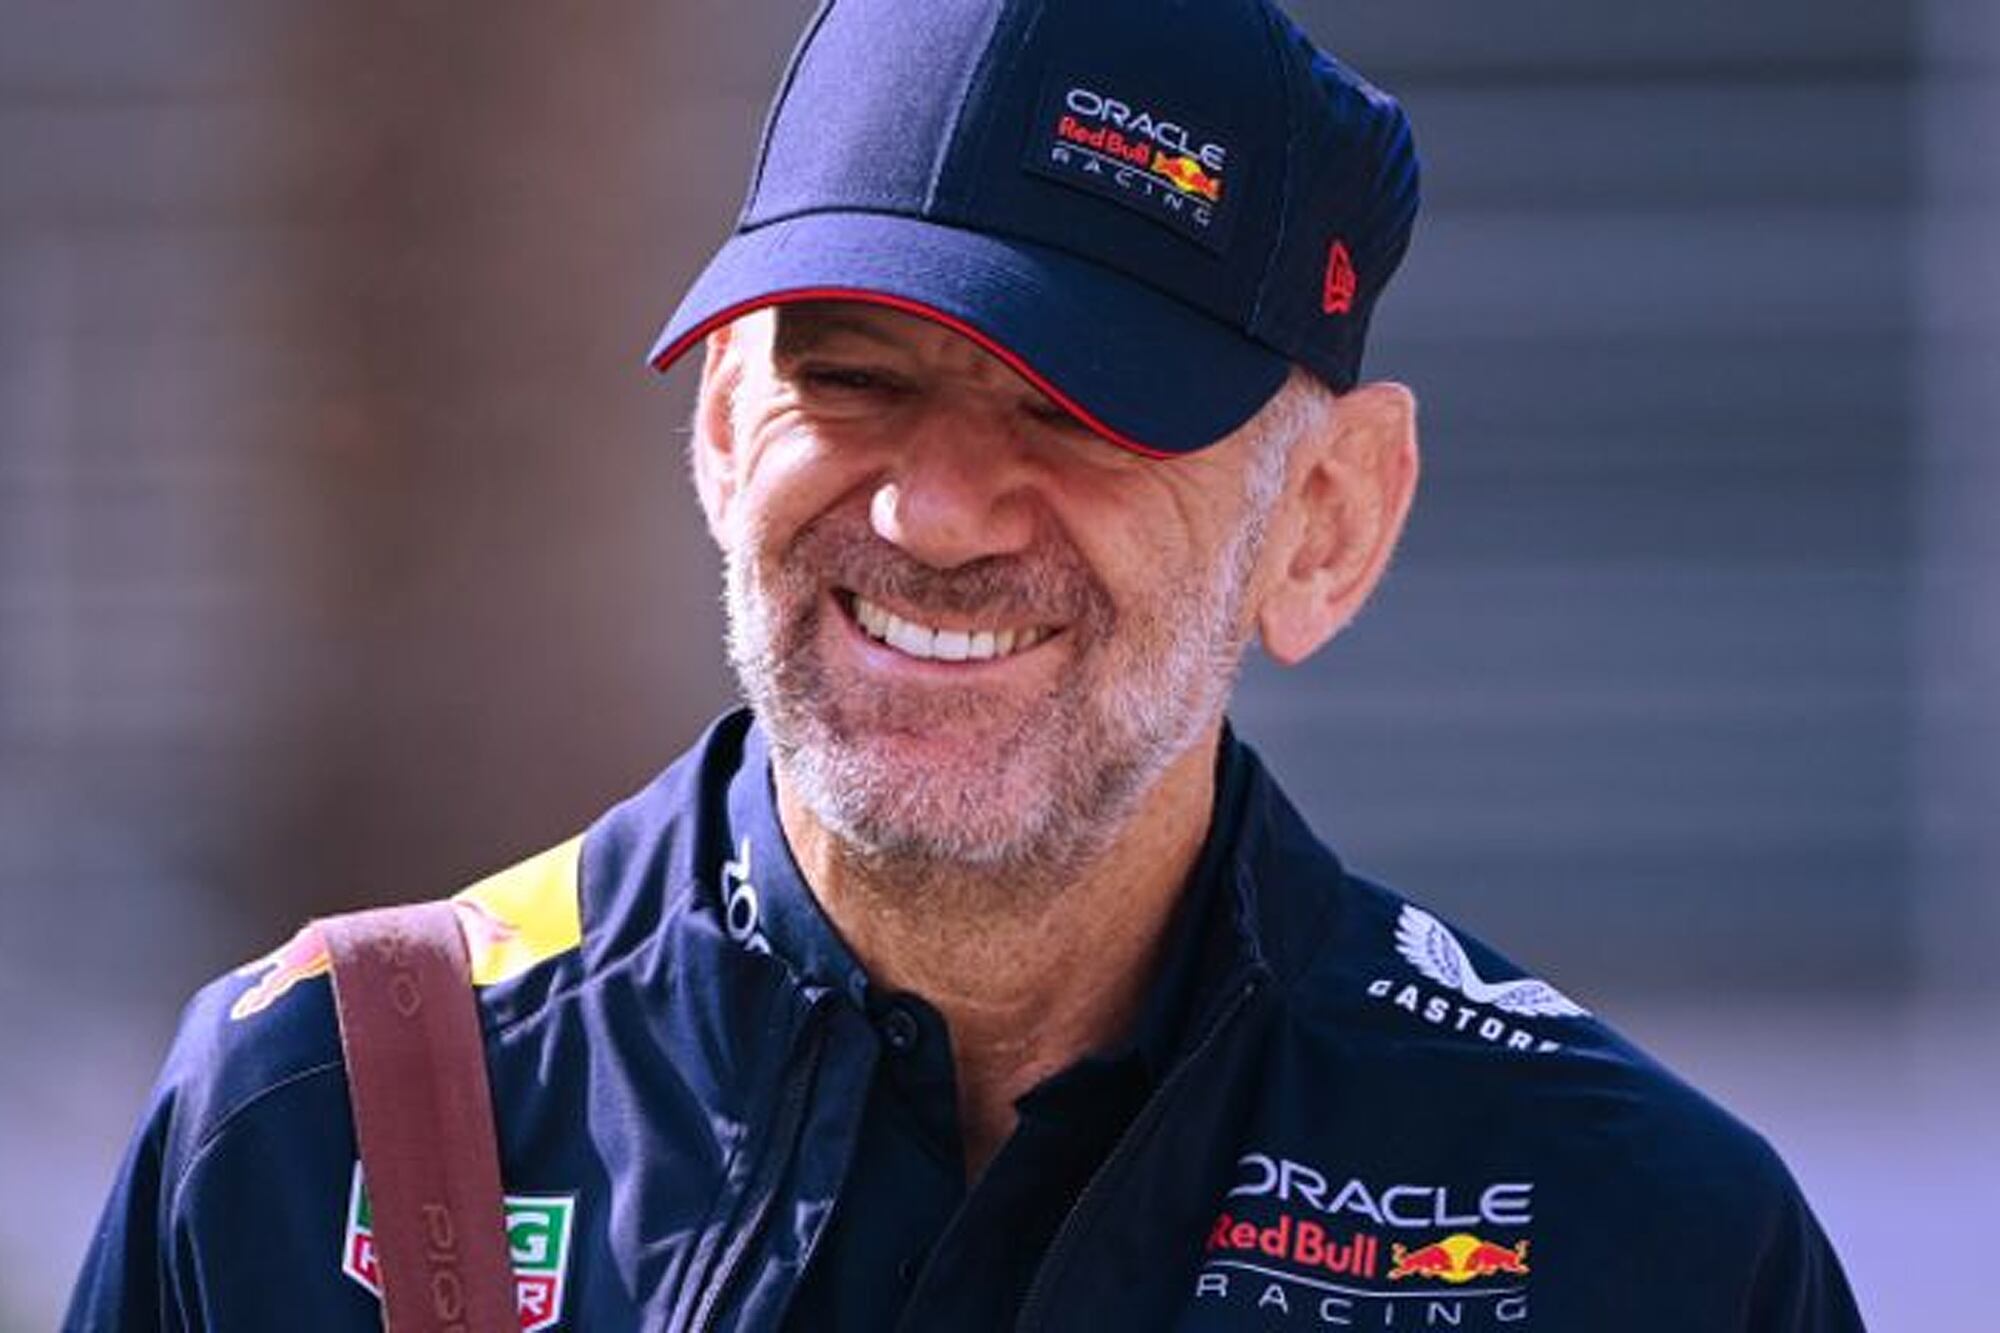 Después de 19 años, Adrian Newey quedará libre de Red Bull Racing en 2025 y tanto Ferrari como Aston Martin desean contratar al genio de la aerodinámica